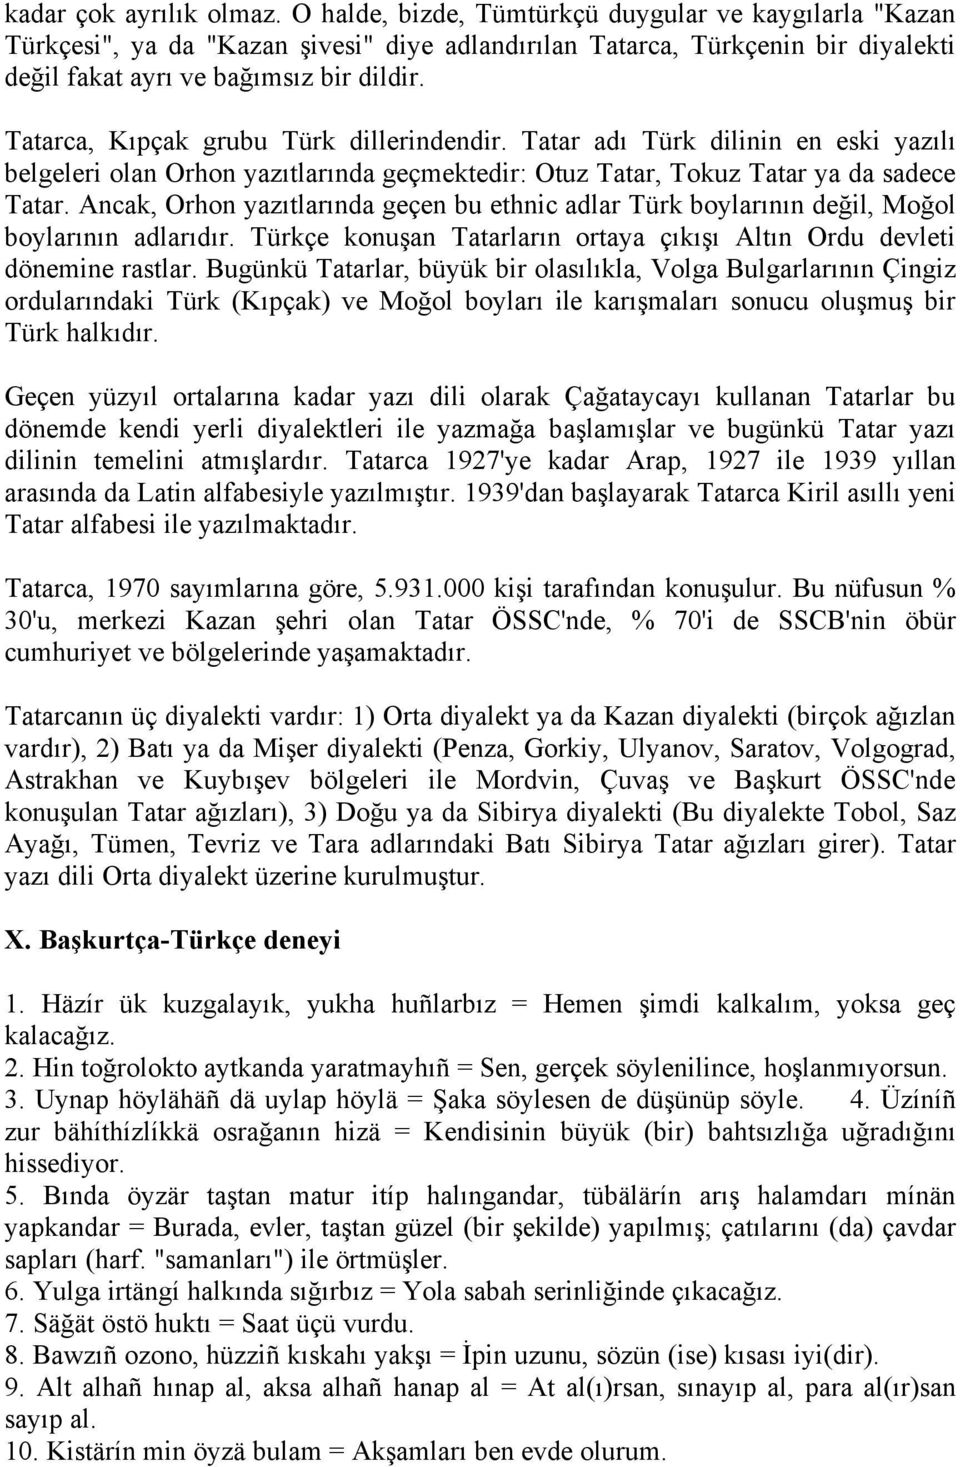 Tatarca, Kıpçak grubu Türk dillerindendir. Tatar adı Türk dilinin en eski yazılı belgeleri olan Orhon yazıtlarında geçmektedir: Otuz Tatar, Tokuz Tatar ya da sadece Tatar.